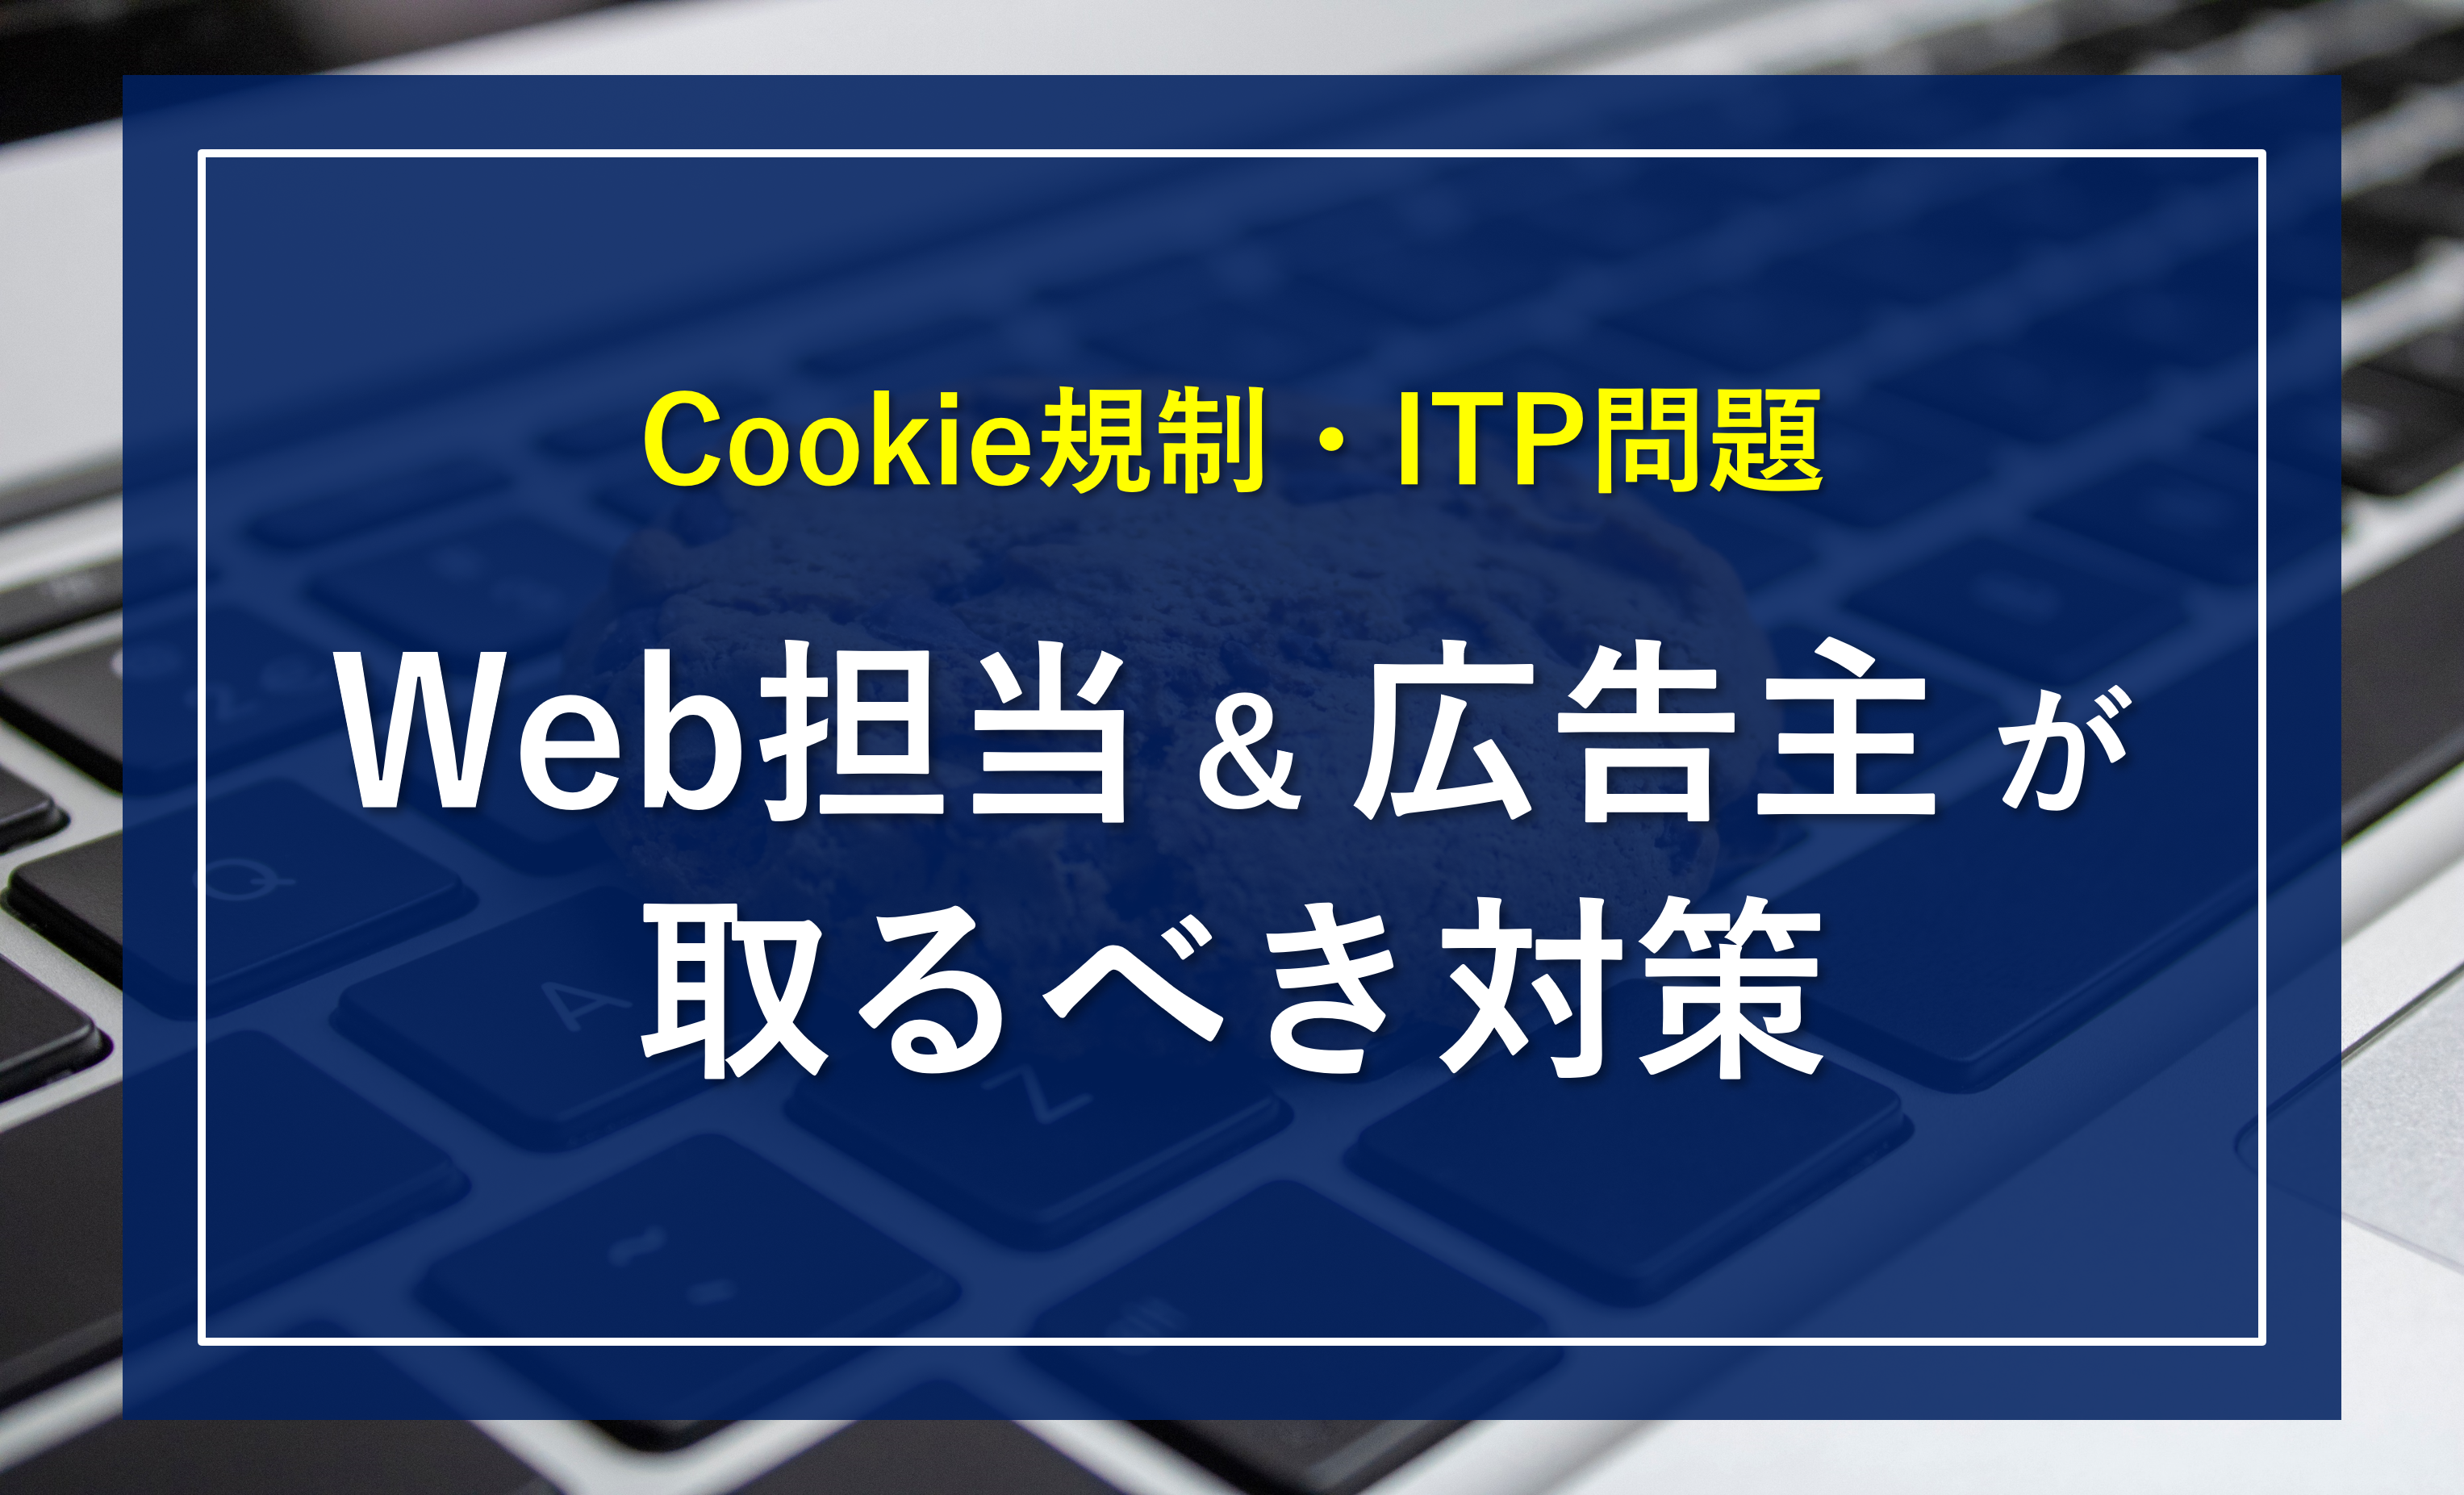 【Web担当者必見】Cookie規制・ITP問題の「影響」と広告主が取るべき「対策」